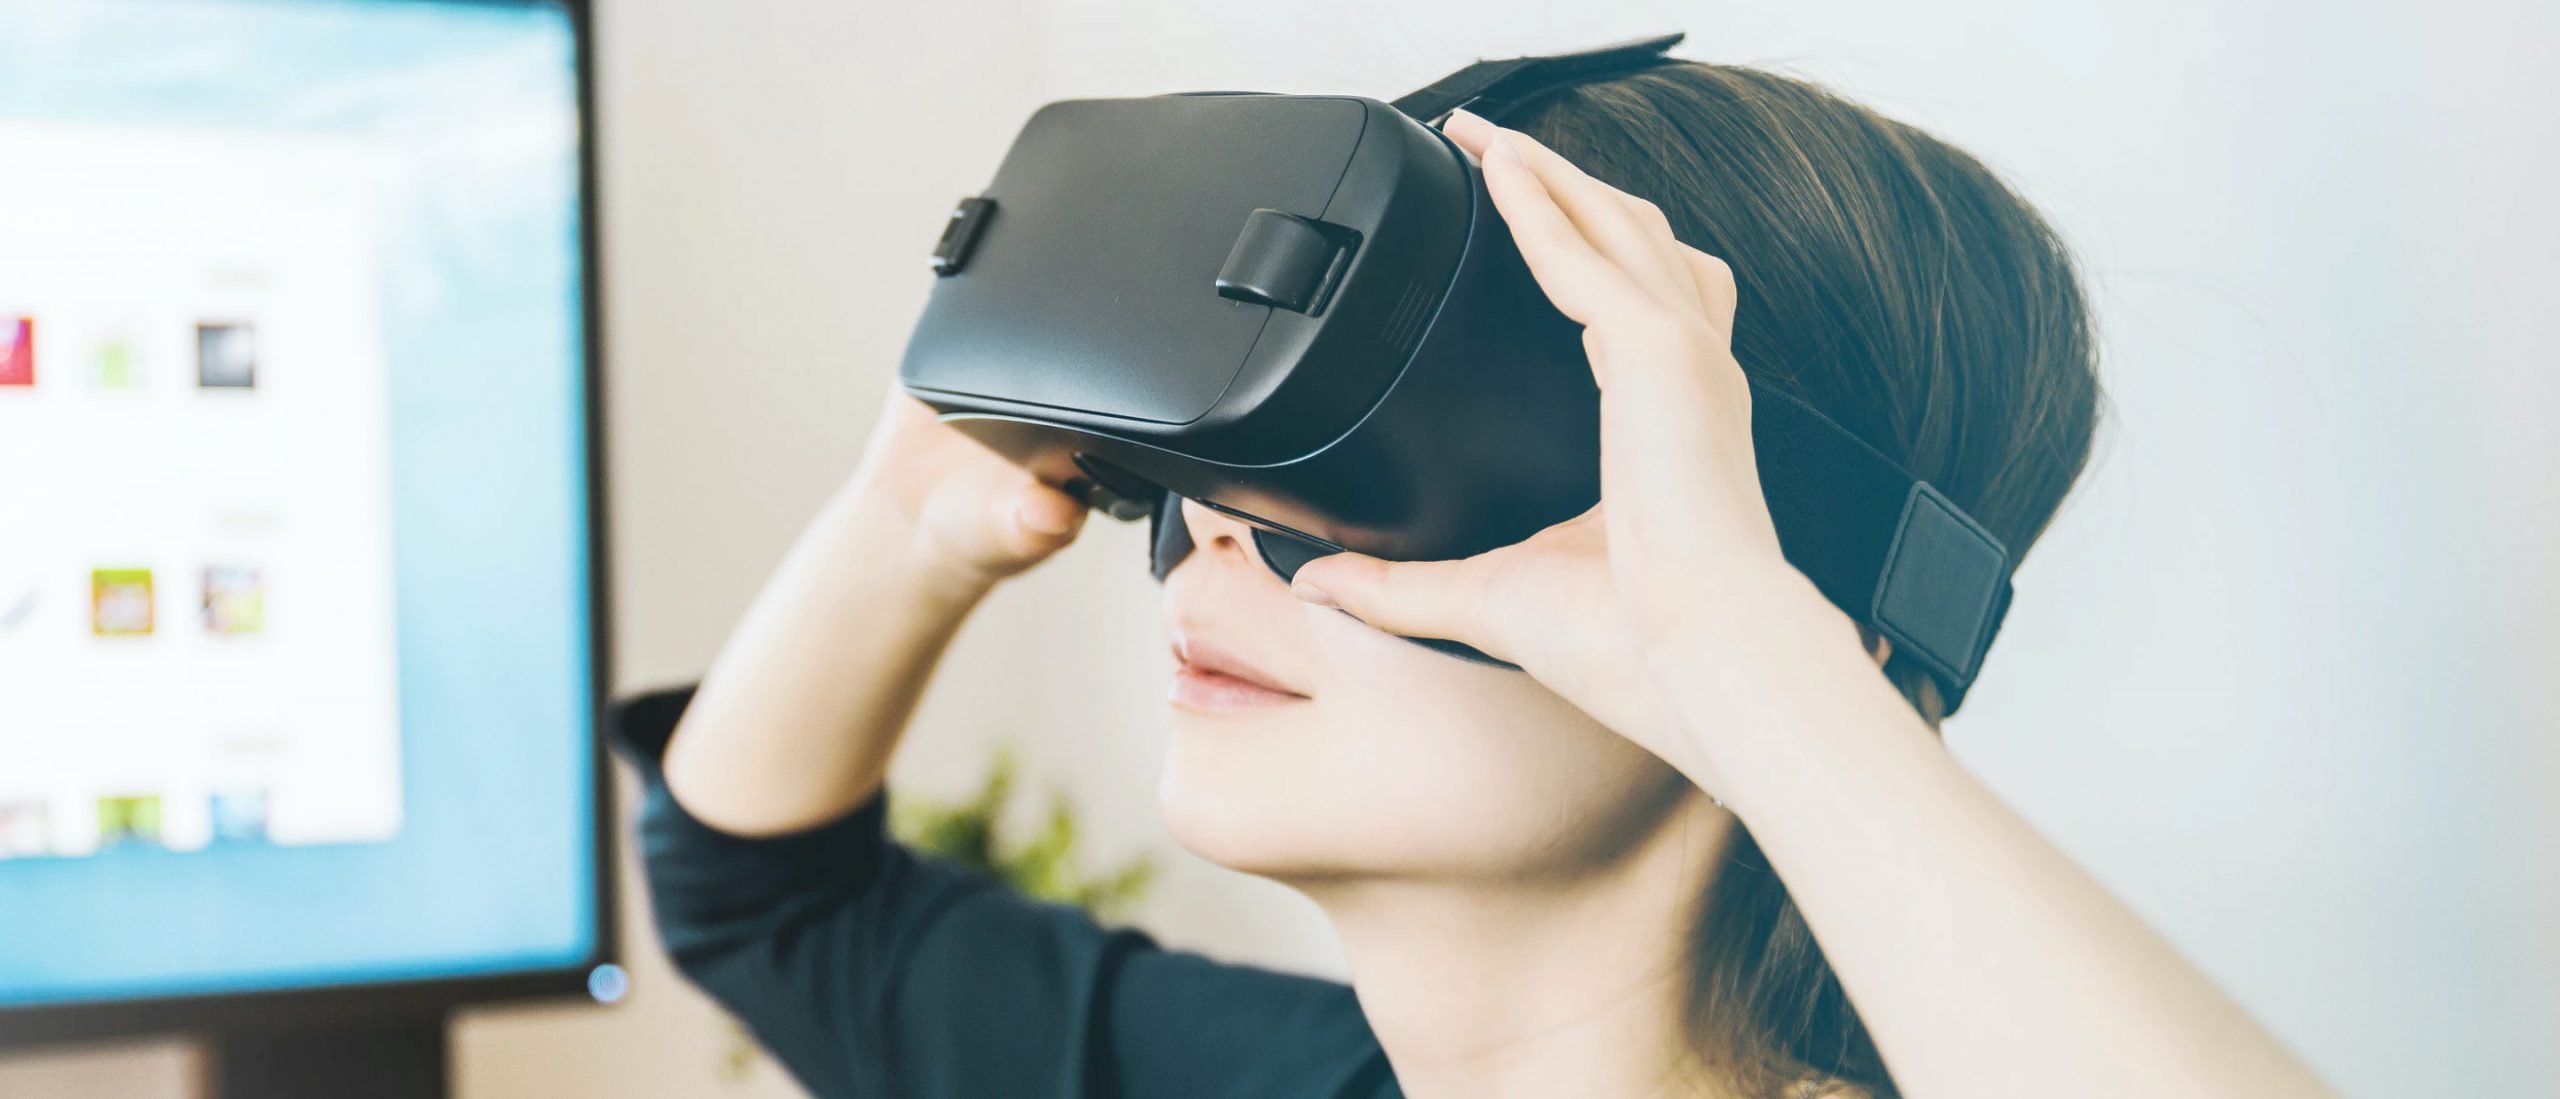 Подключаем vr к компьютеру. Очки ВИЗИОН VR. Девушка в VR очках. Как подключить VR очки к телефону. Virtual reality.